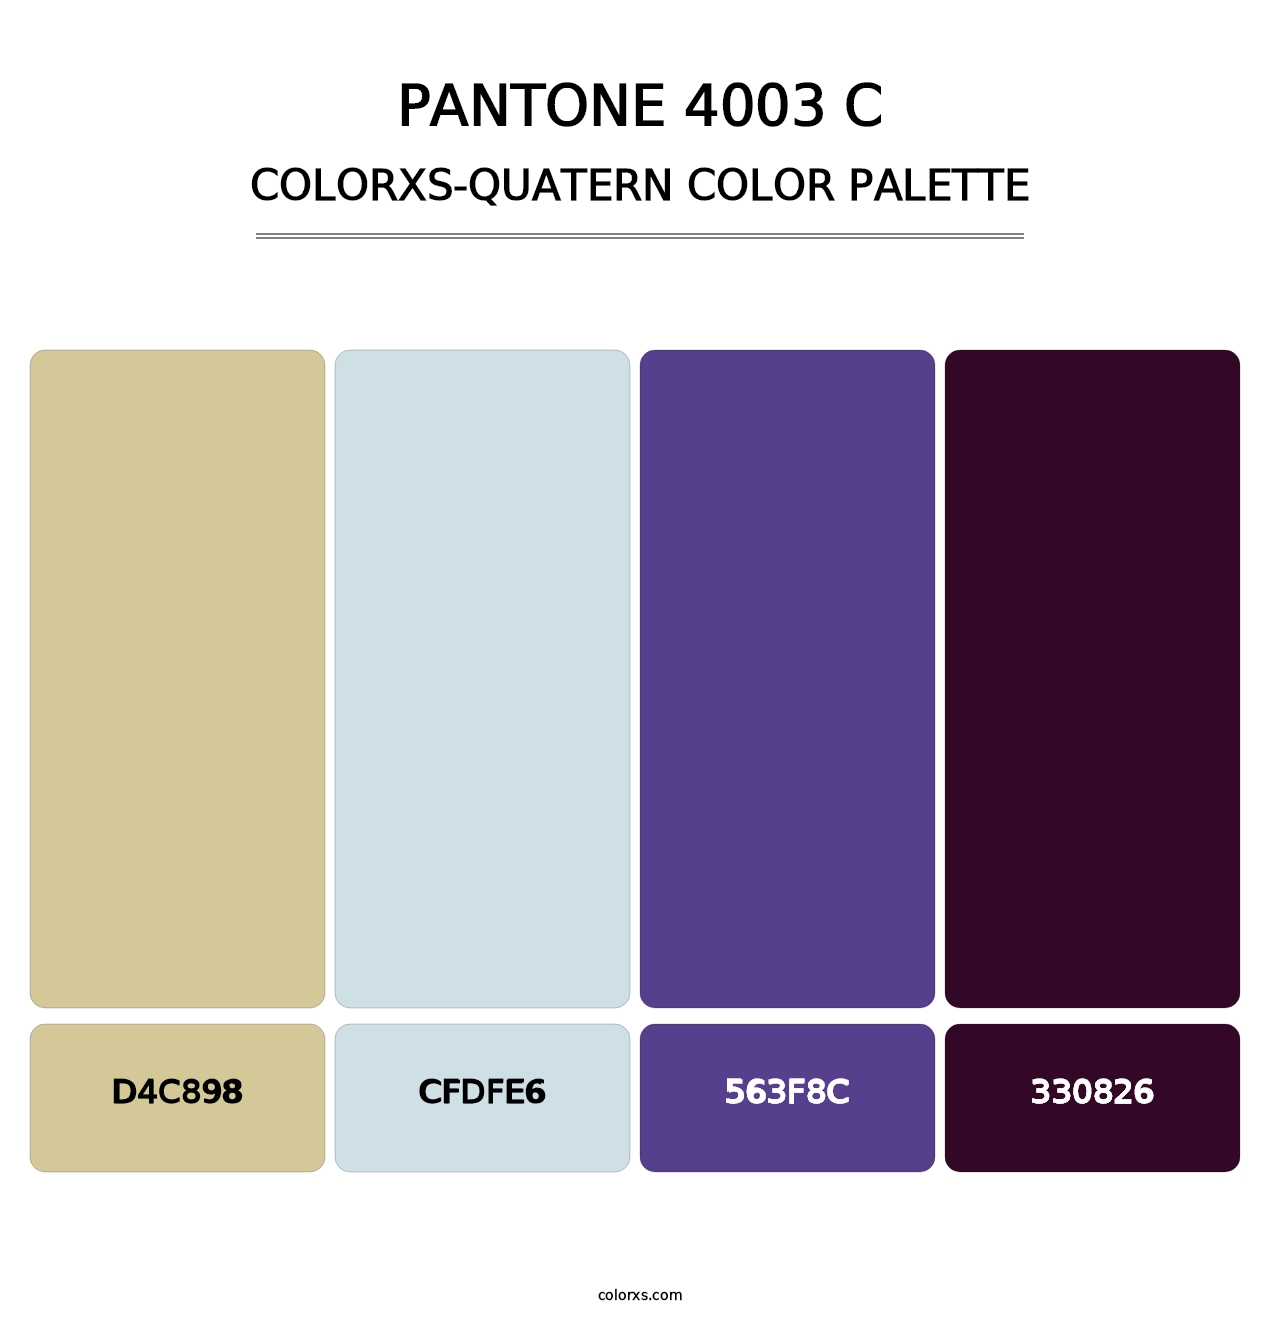 PANTONE 4003 C - Colorxs Quatern Palette